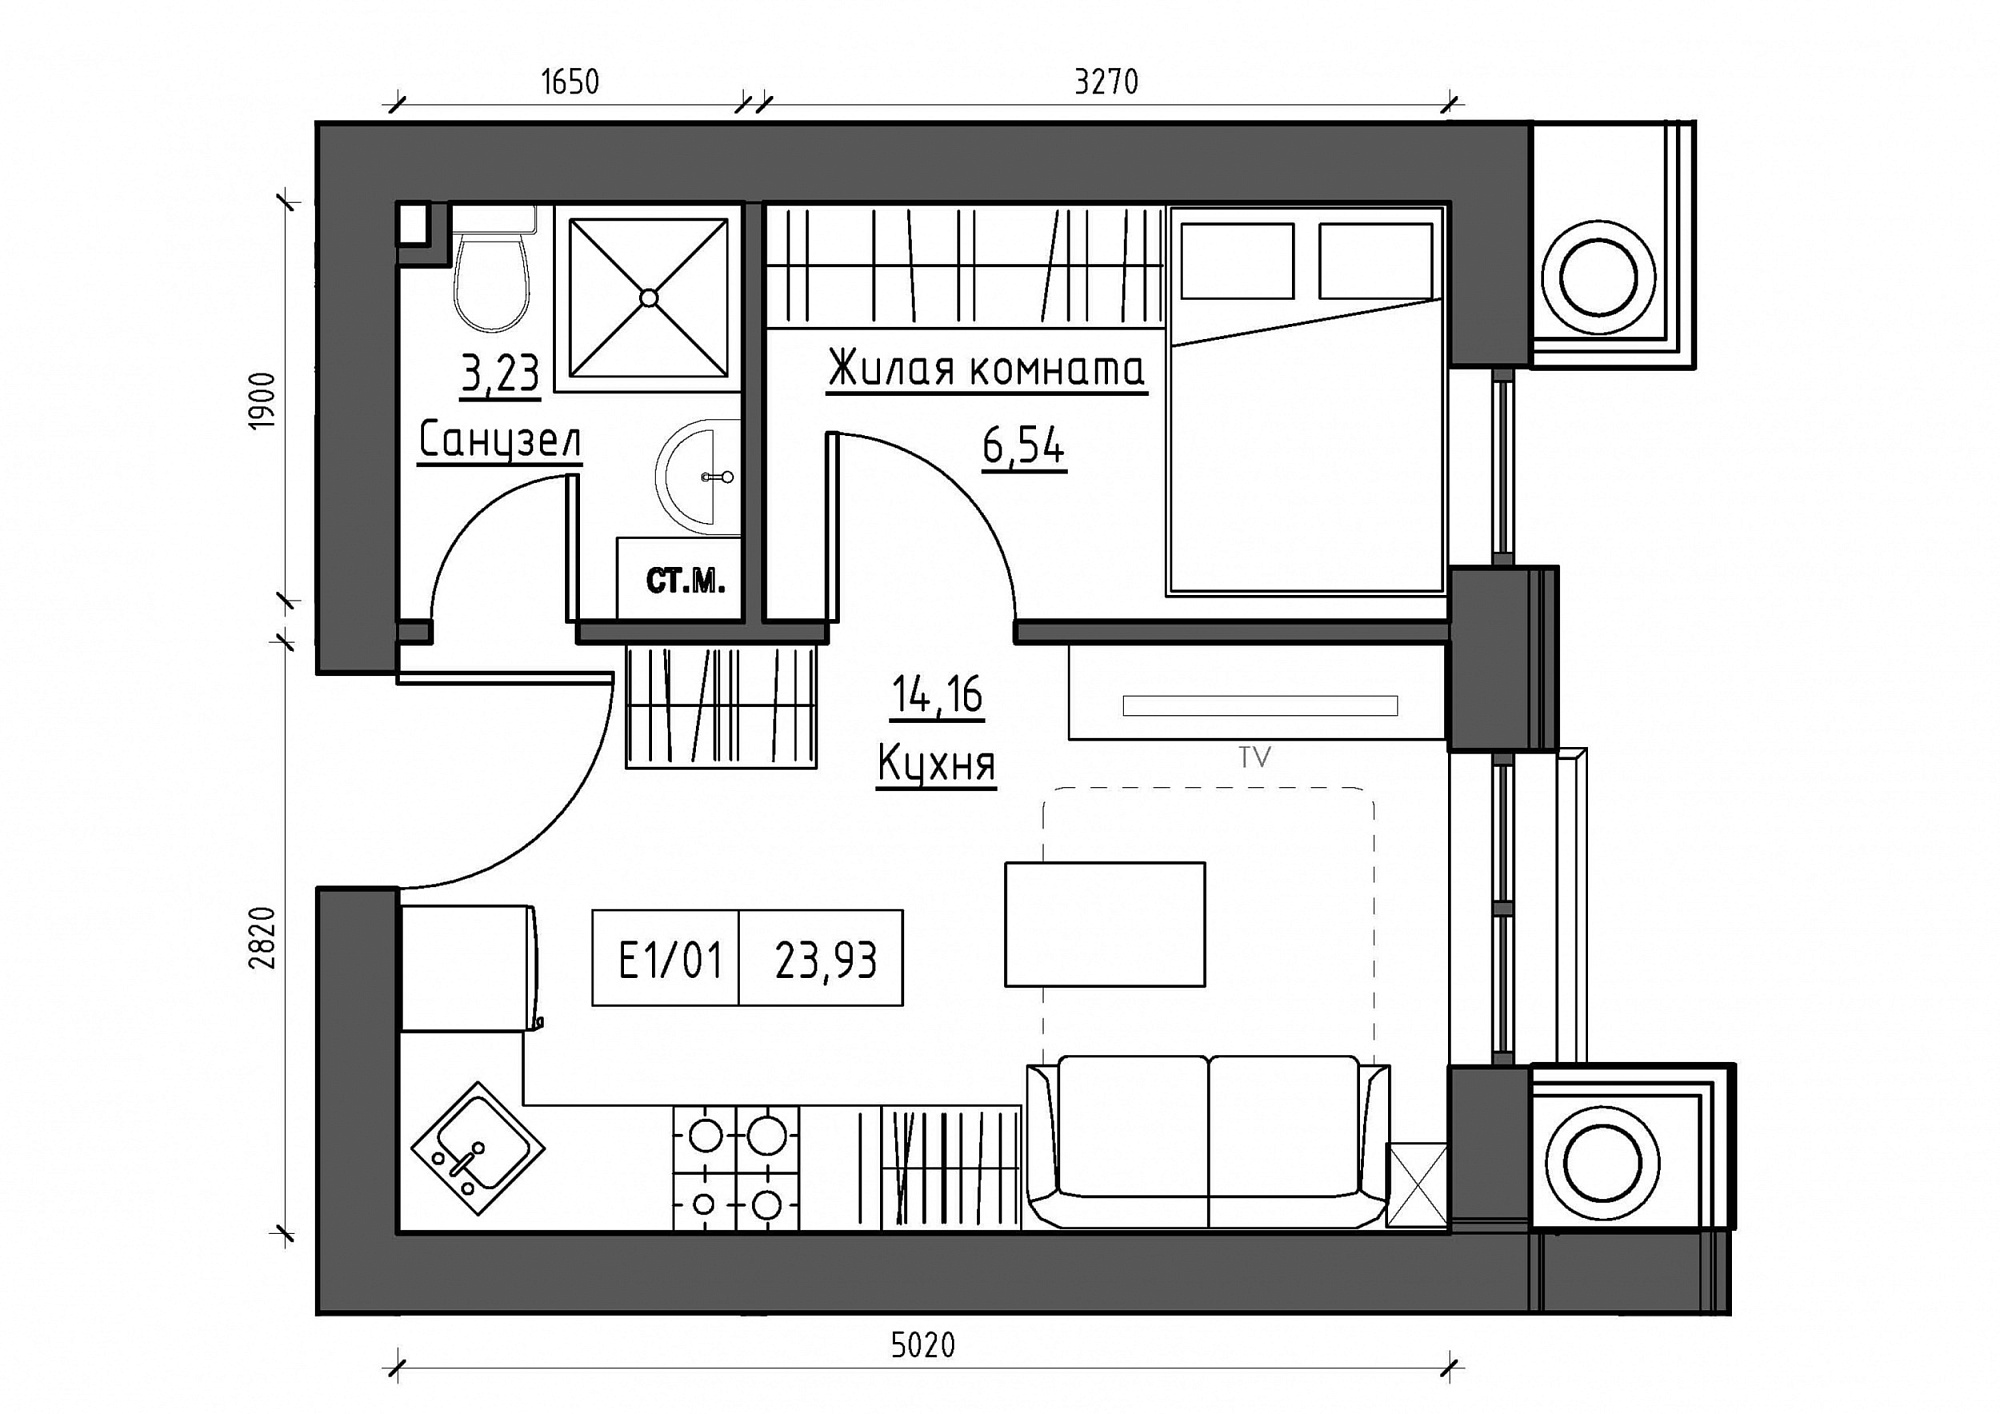 Планировка 1-к квартира площей 23.93м2, KS-011-03/0004.